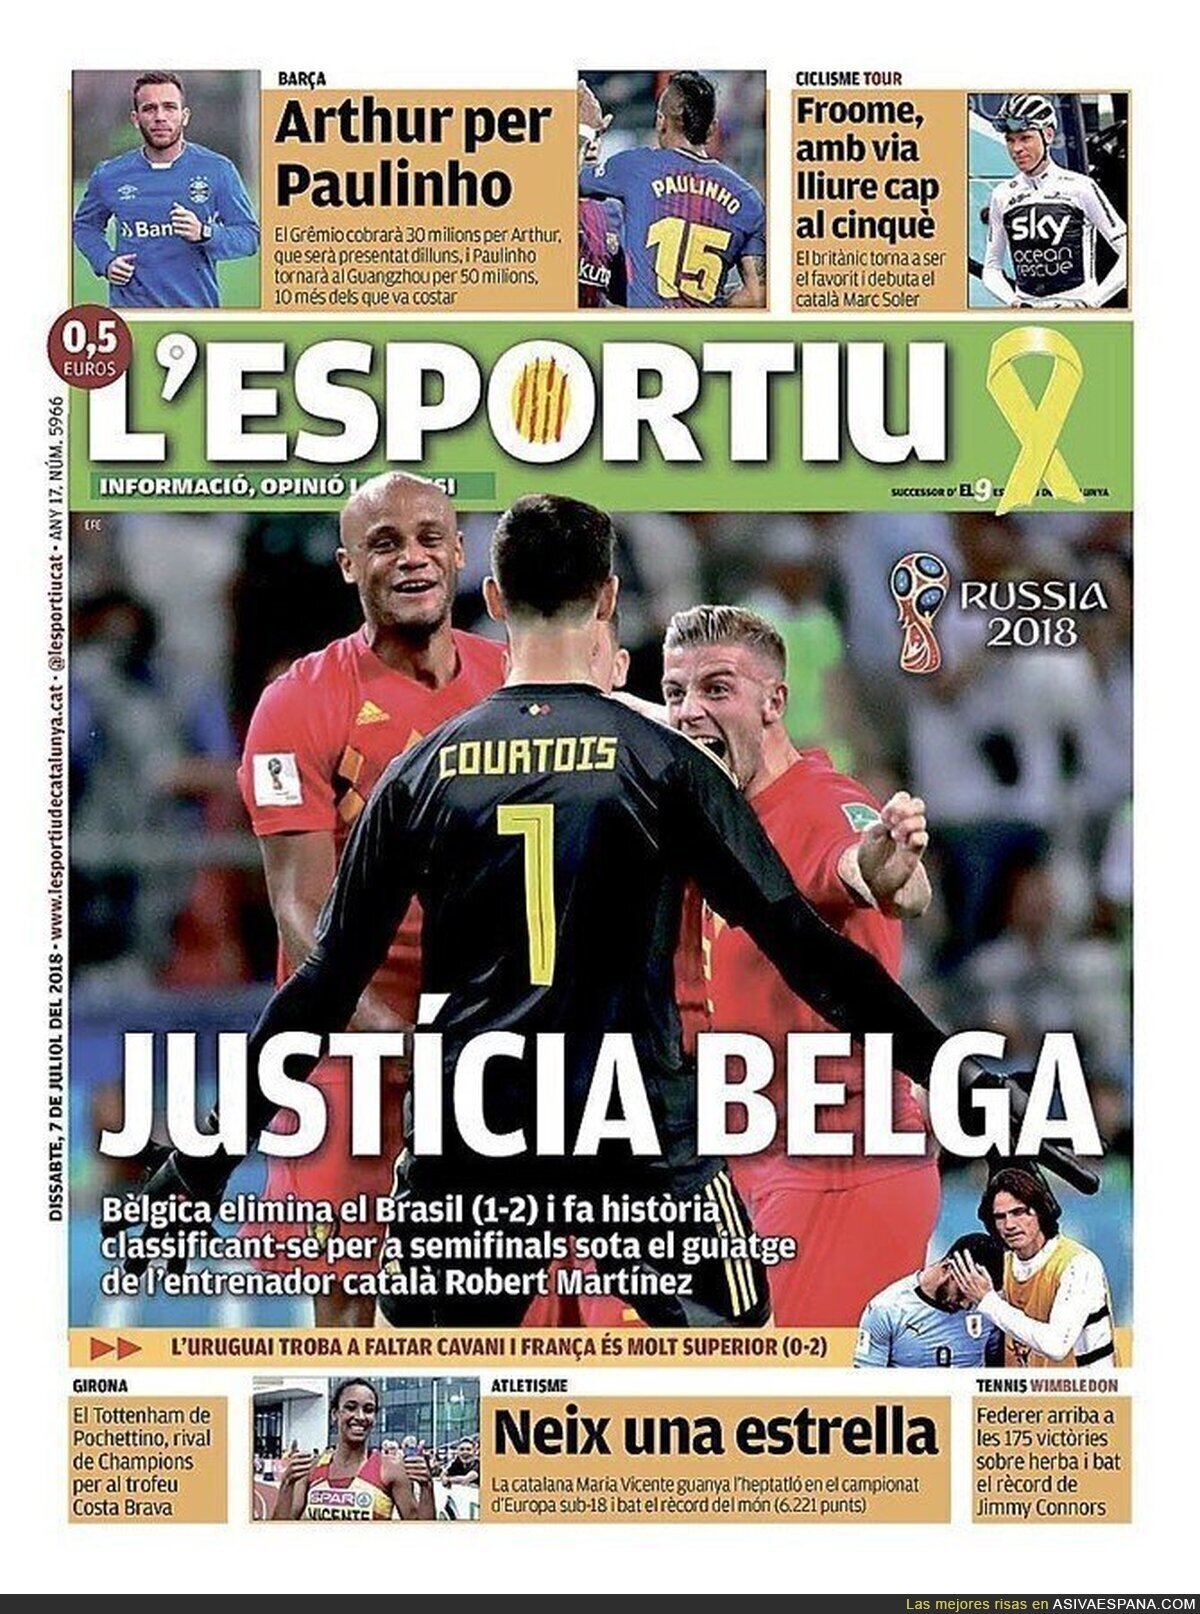 La gran portada de L'Esportiu tras la victoria de Bélgica en el Mundial